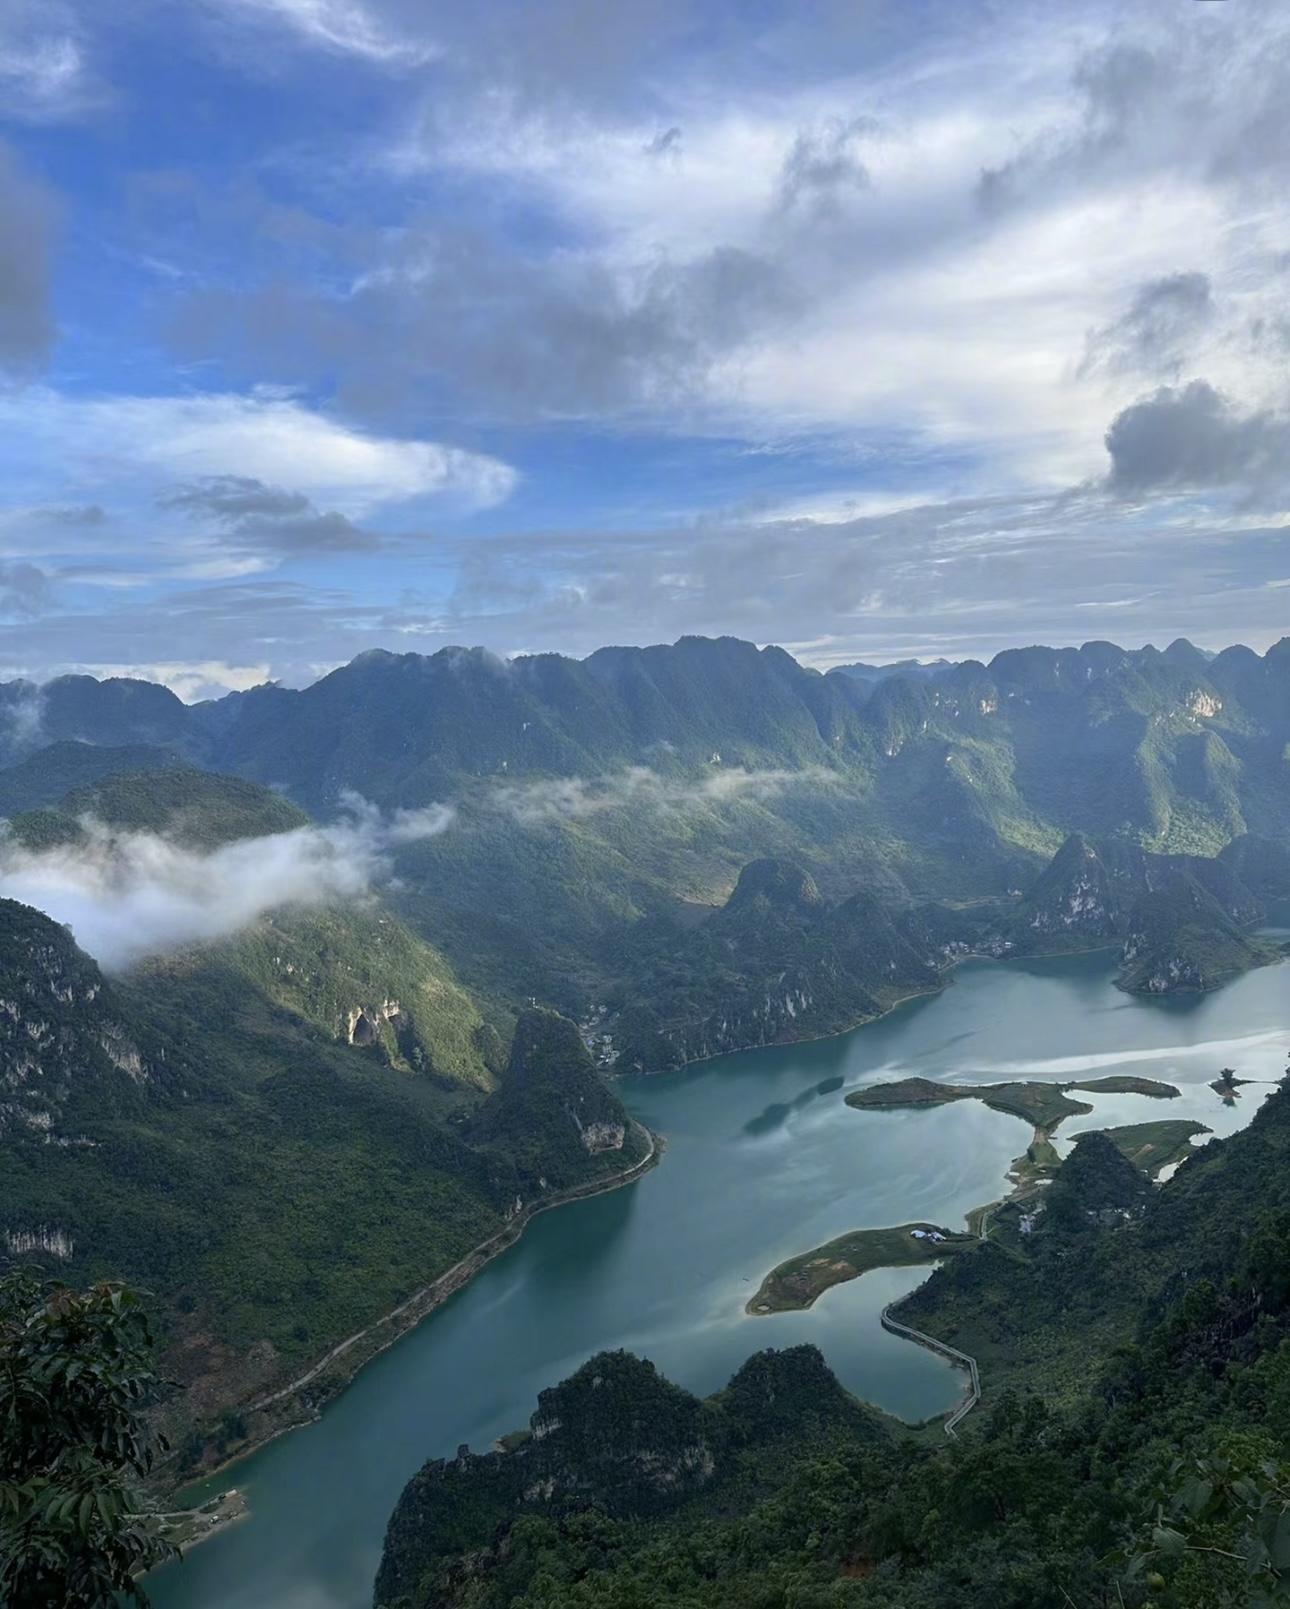 浩坤湖景区可以选择自驾和徒步/骑行